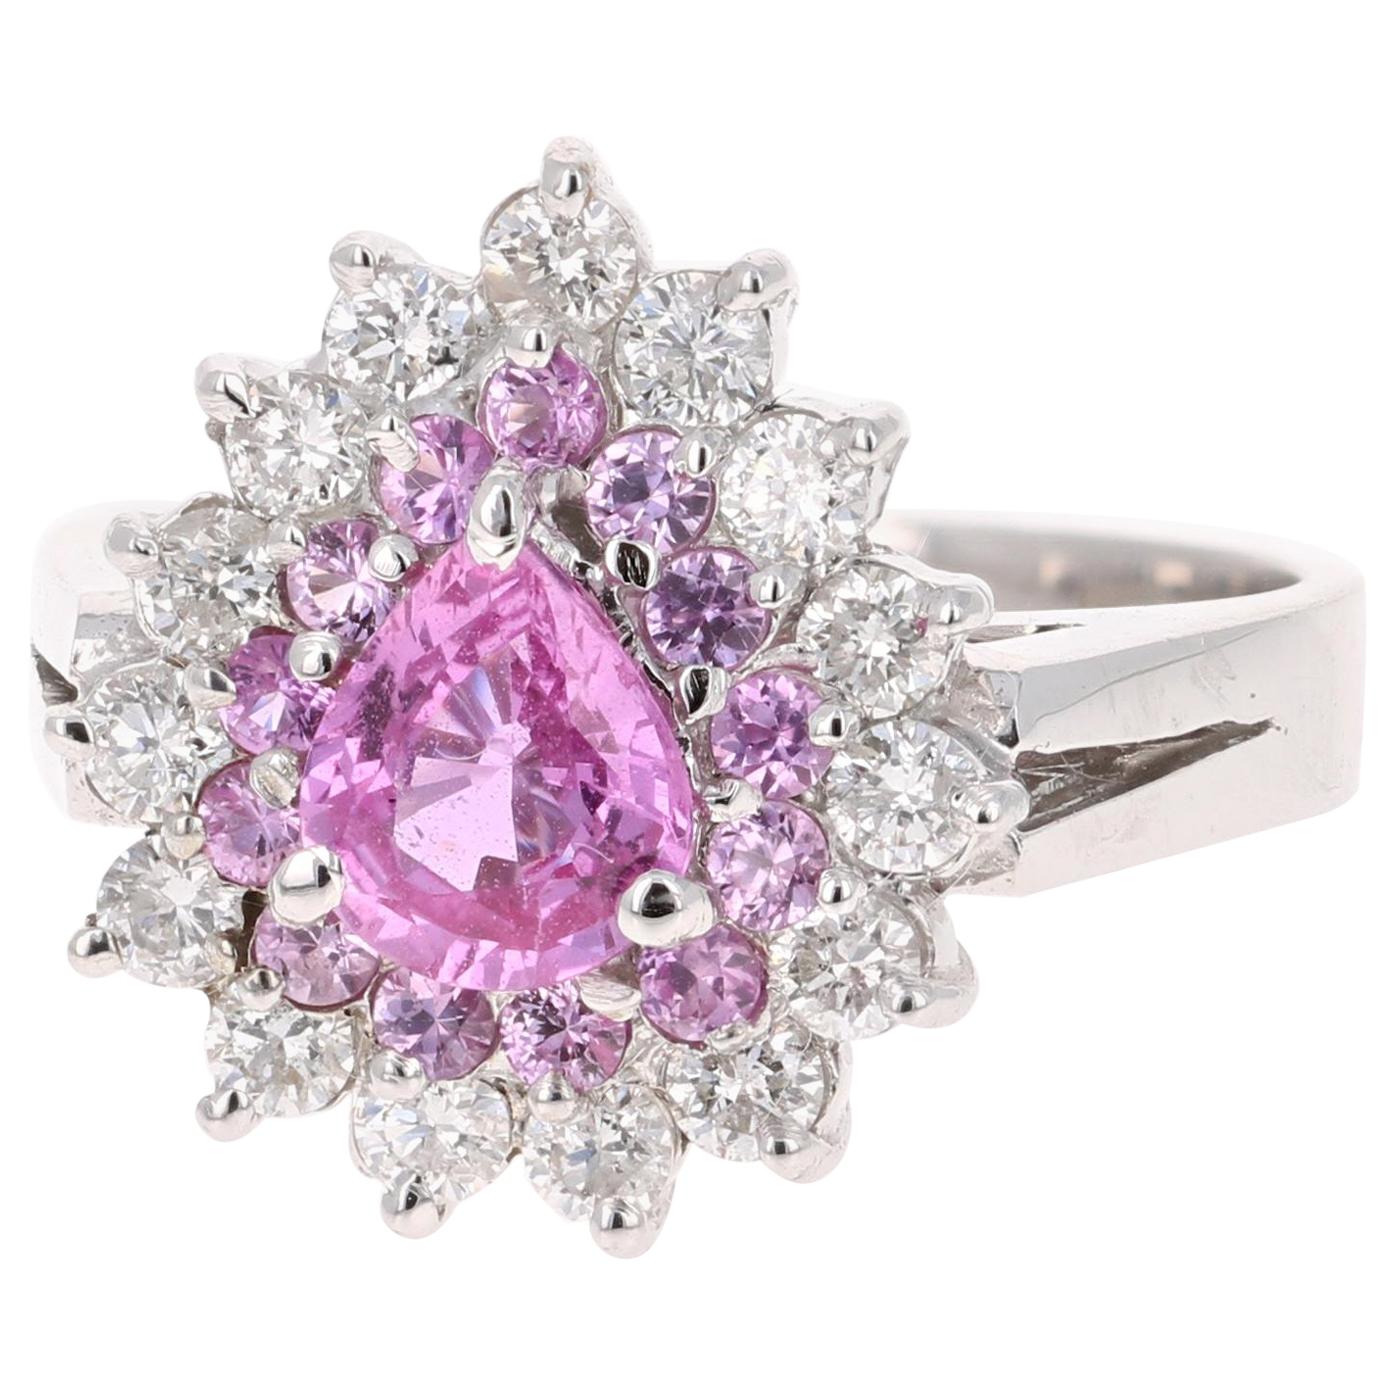 Atemberaubender Diamantring mit rosa Saphir! Kann der einzigartigste Verlobungs- oder Cocktailring sein! 

Die Mitte Pear Cut Pink Sapphire ist 0,91 Karat und ist von einem doppelten Halo umgeben. Einer der Halos hat 13 rosa Saphire mit einem